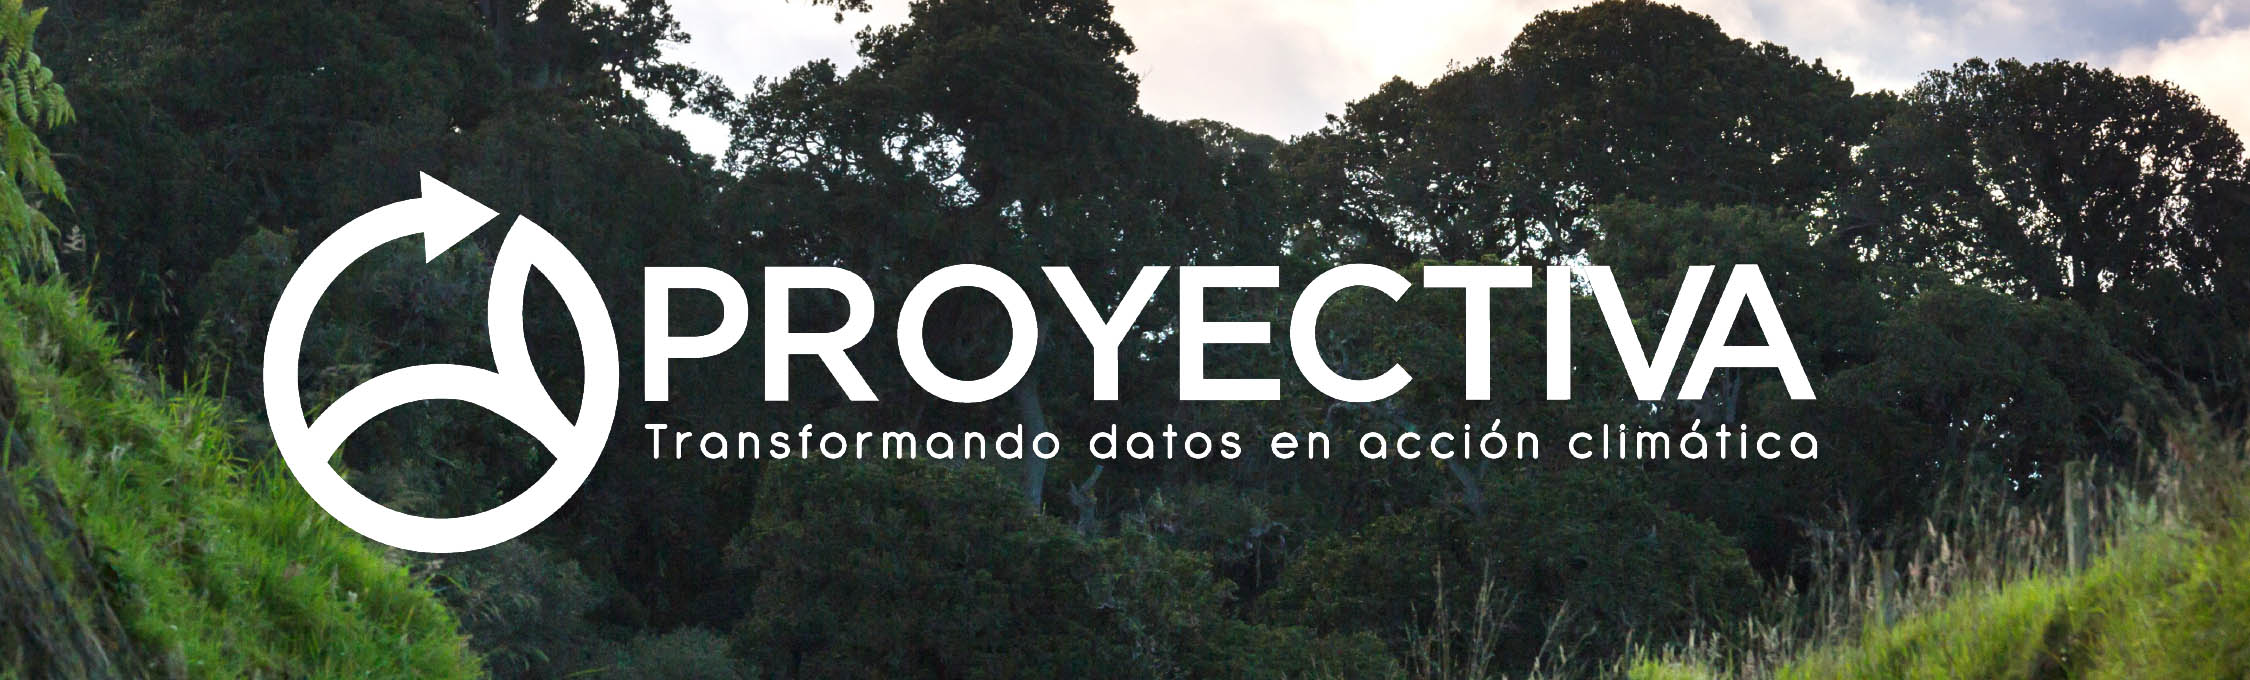 Proyectiva: transformando datos en acción climática